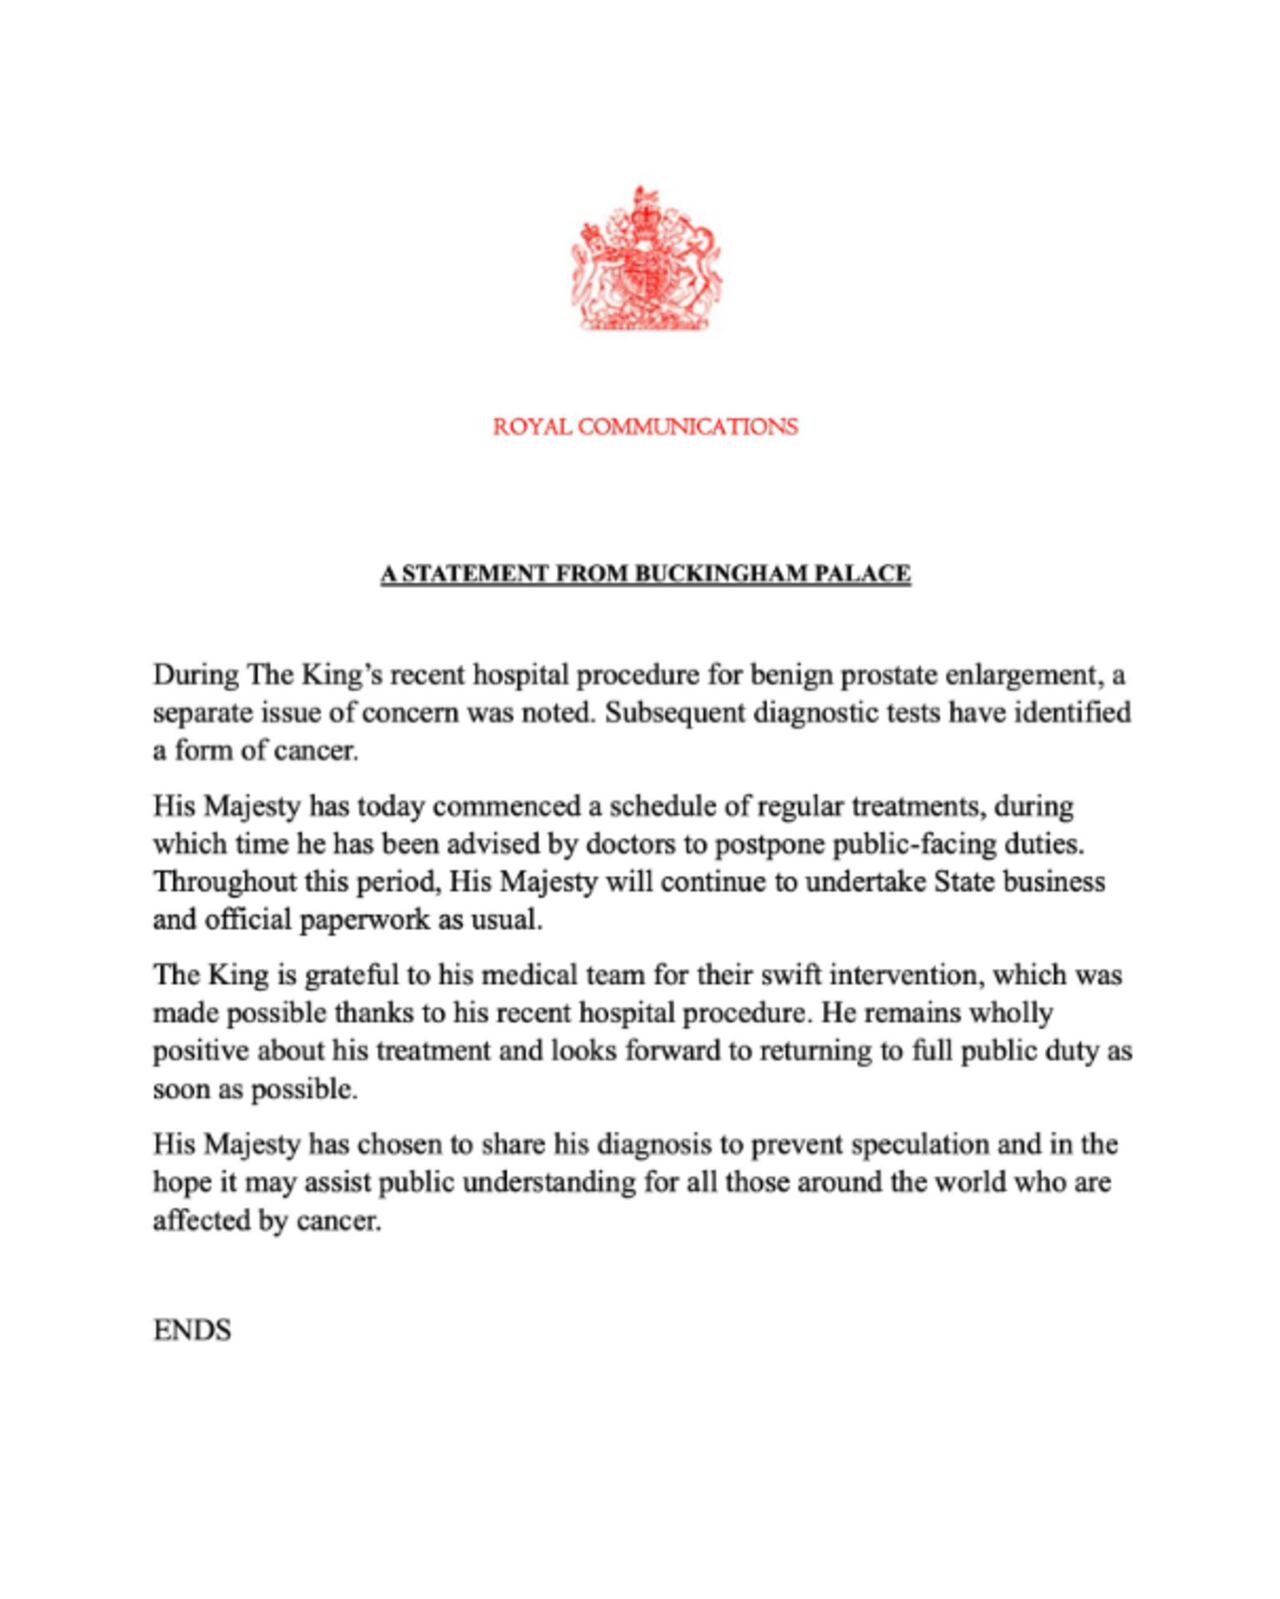 El Rey Carlos III diagnosticado de cáncer, según informó el Palacio de Buckingham por medio de un comunicado.